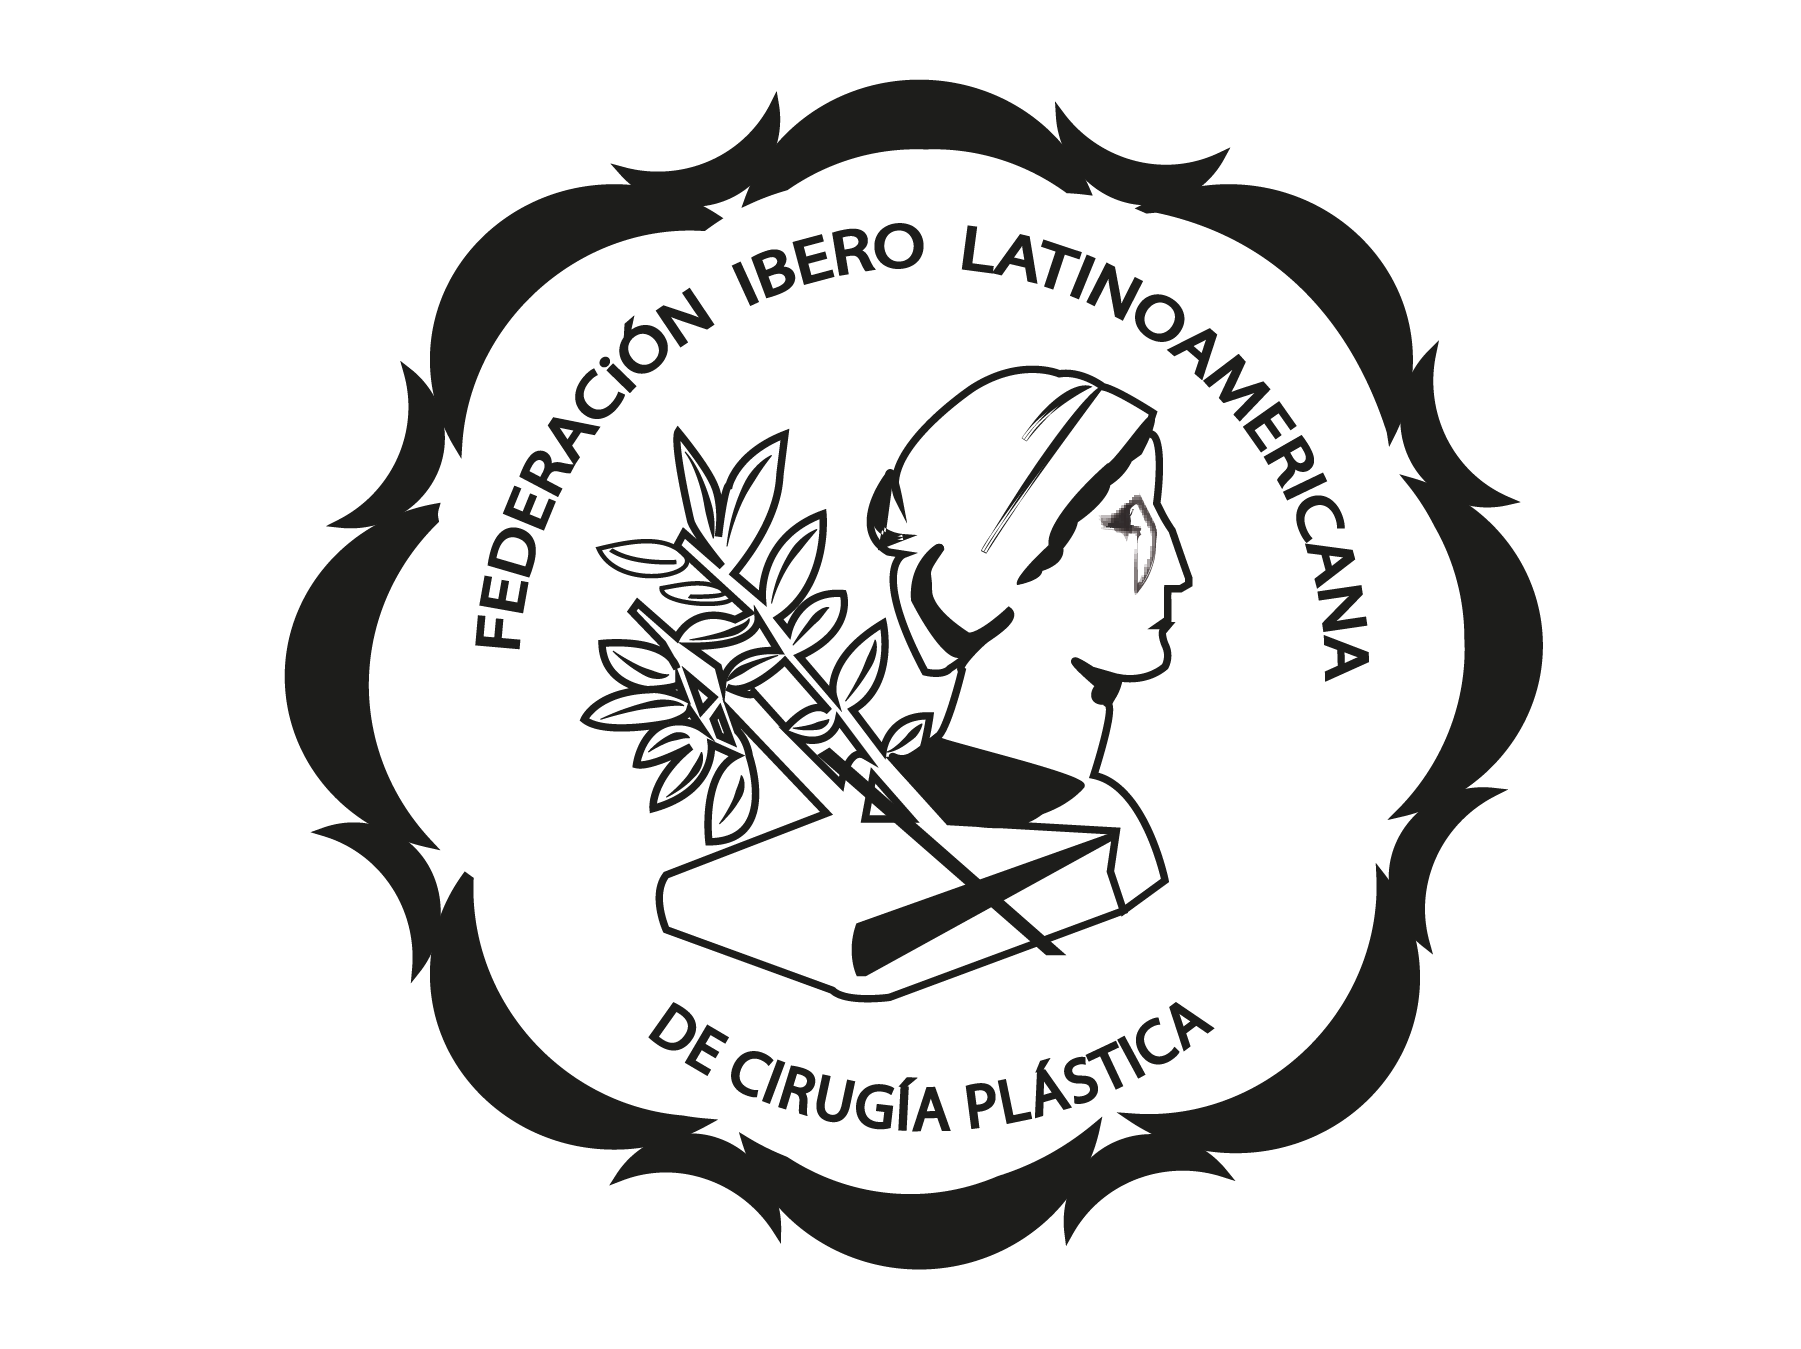 Icono y logotipo de la Federación Ibero Latinoamericana de Cirugía Plástica con fondo transparente.